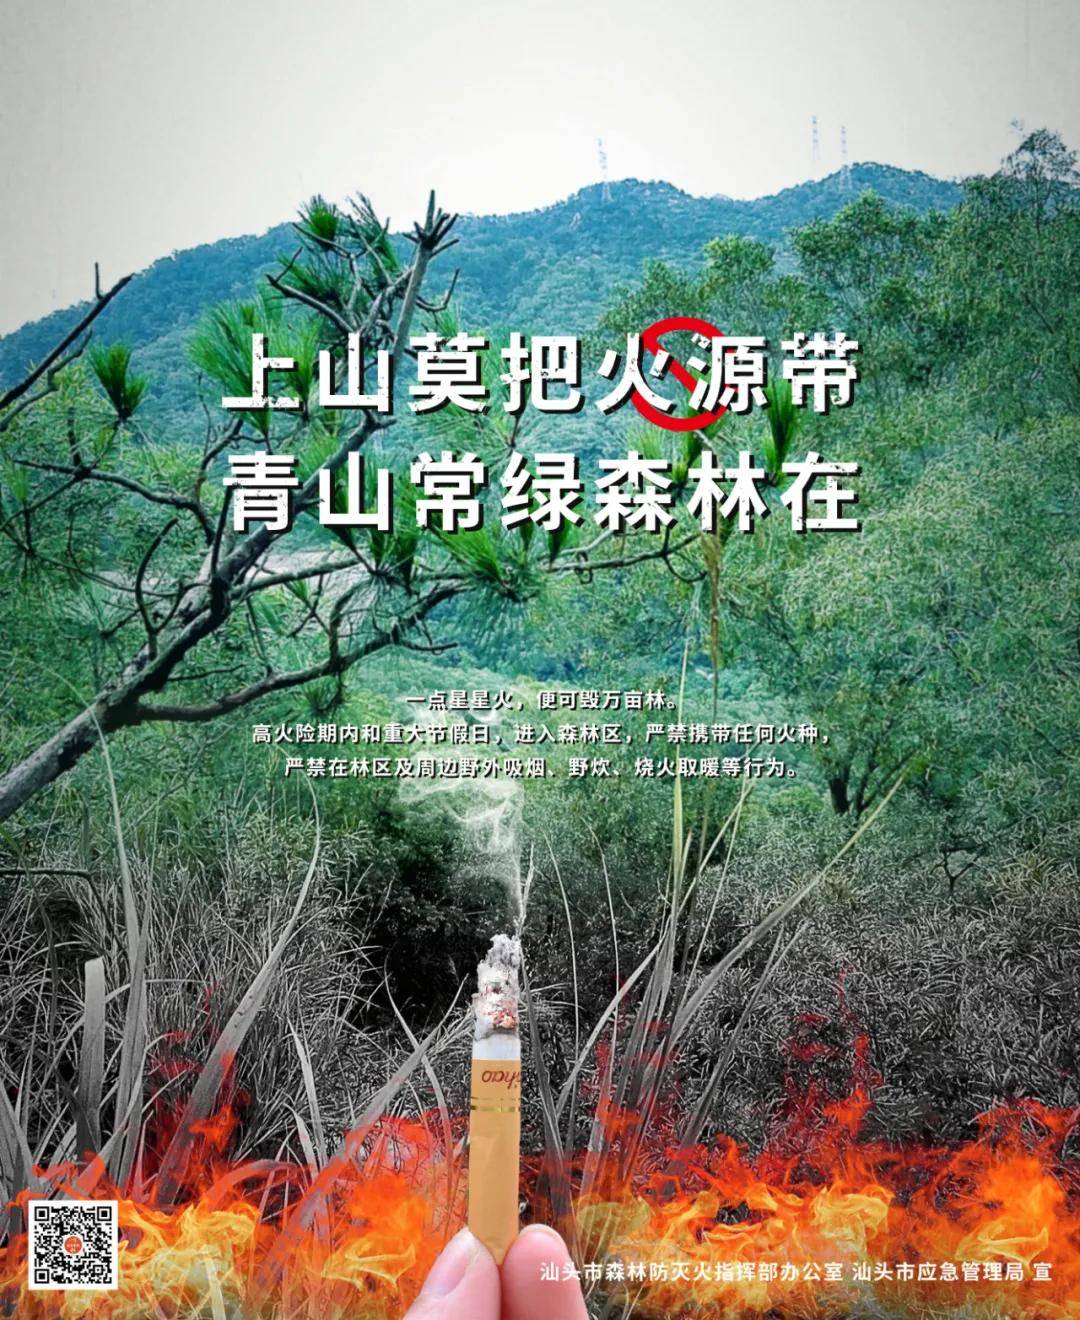 致汕头全体志愿者参与森林防火的倡议书